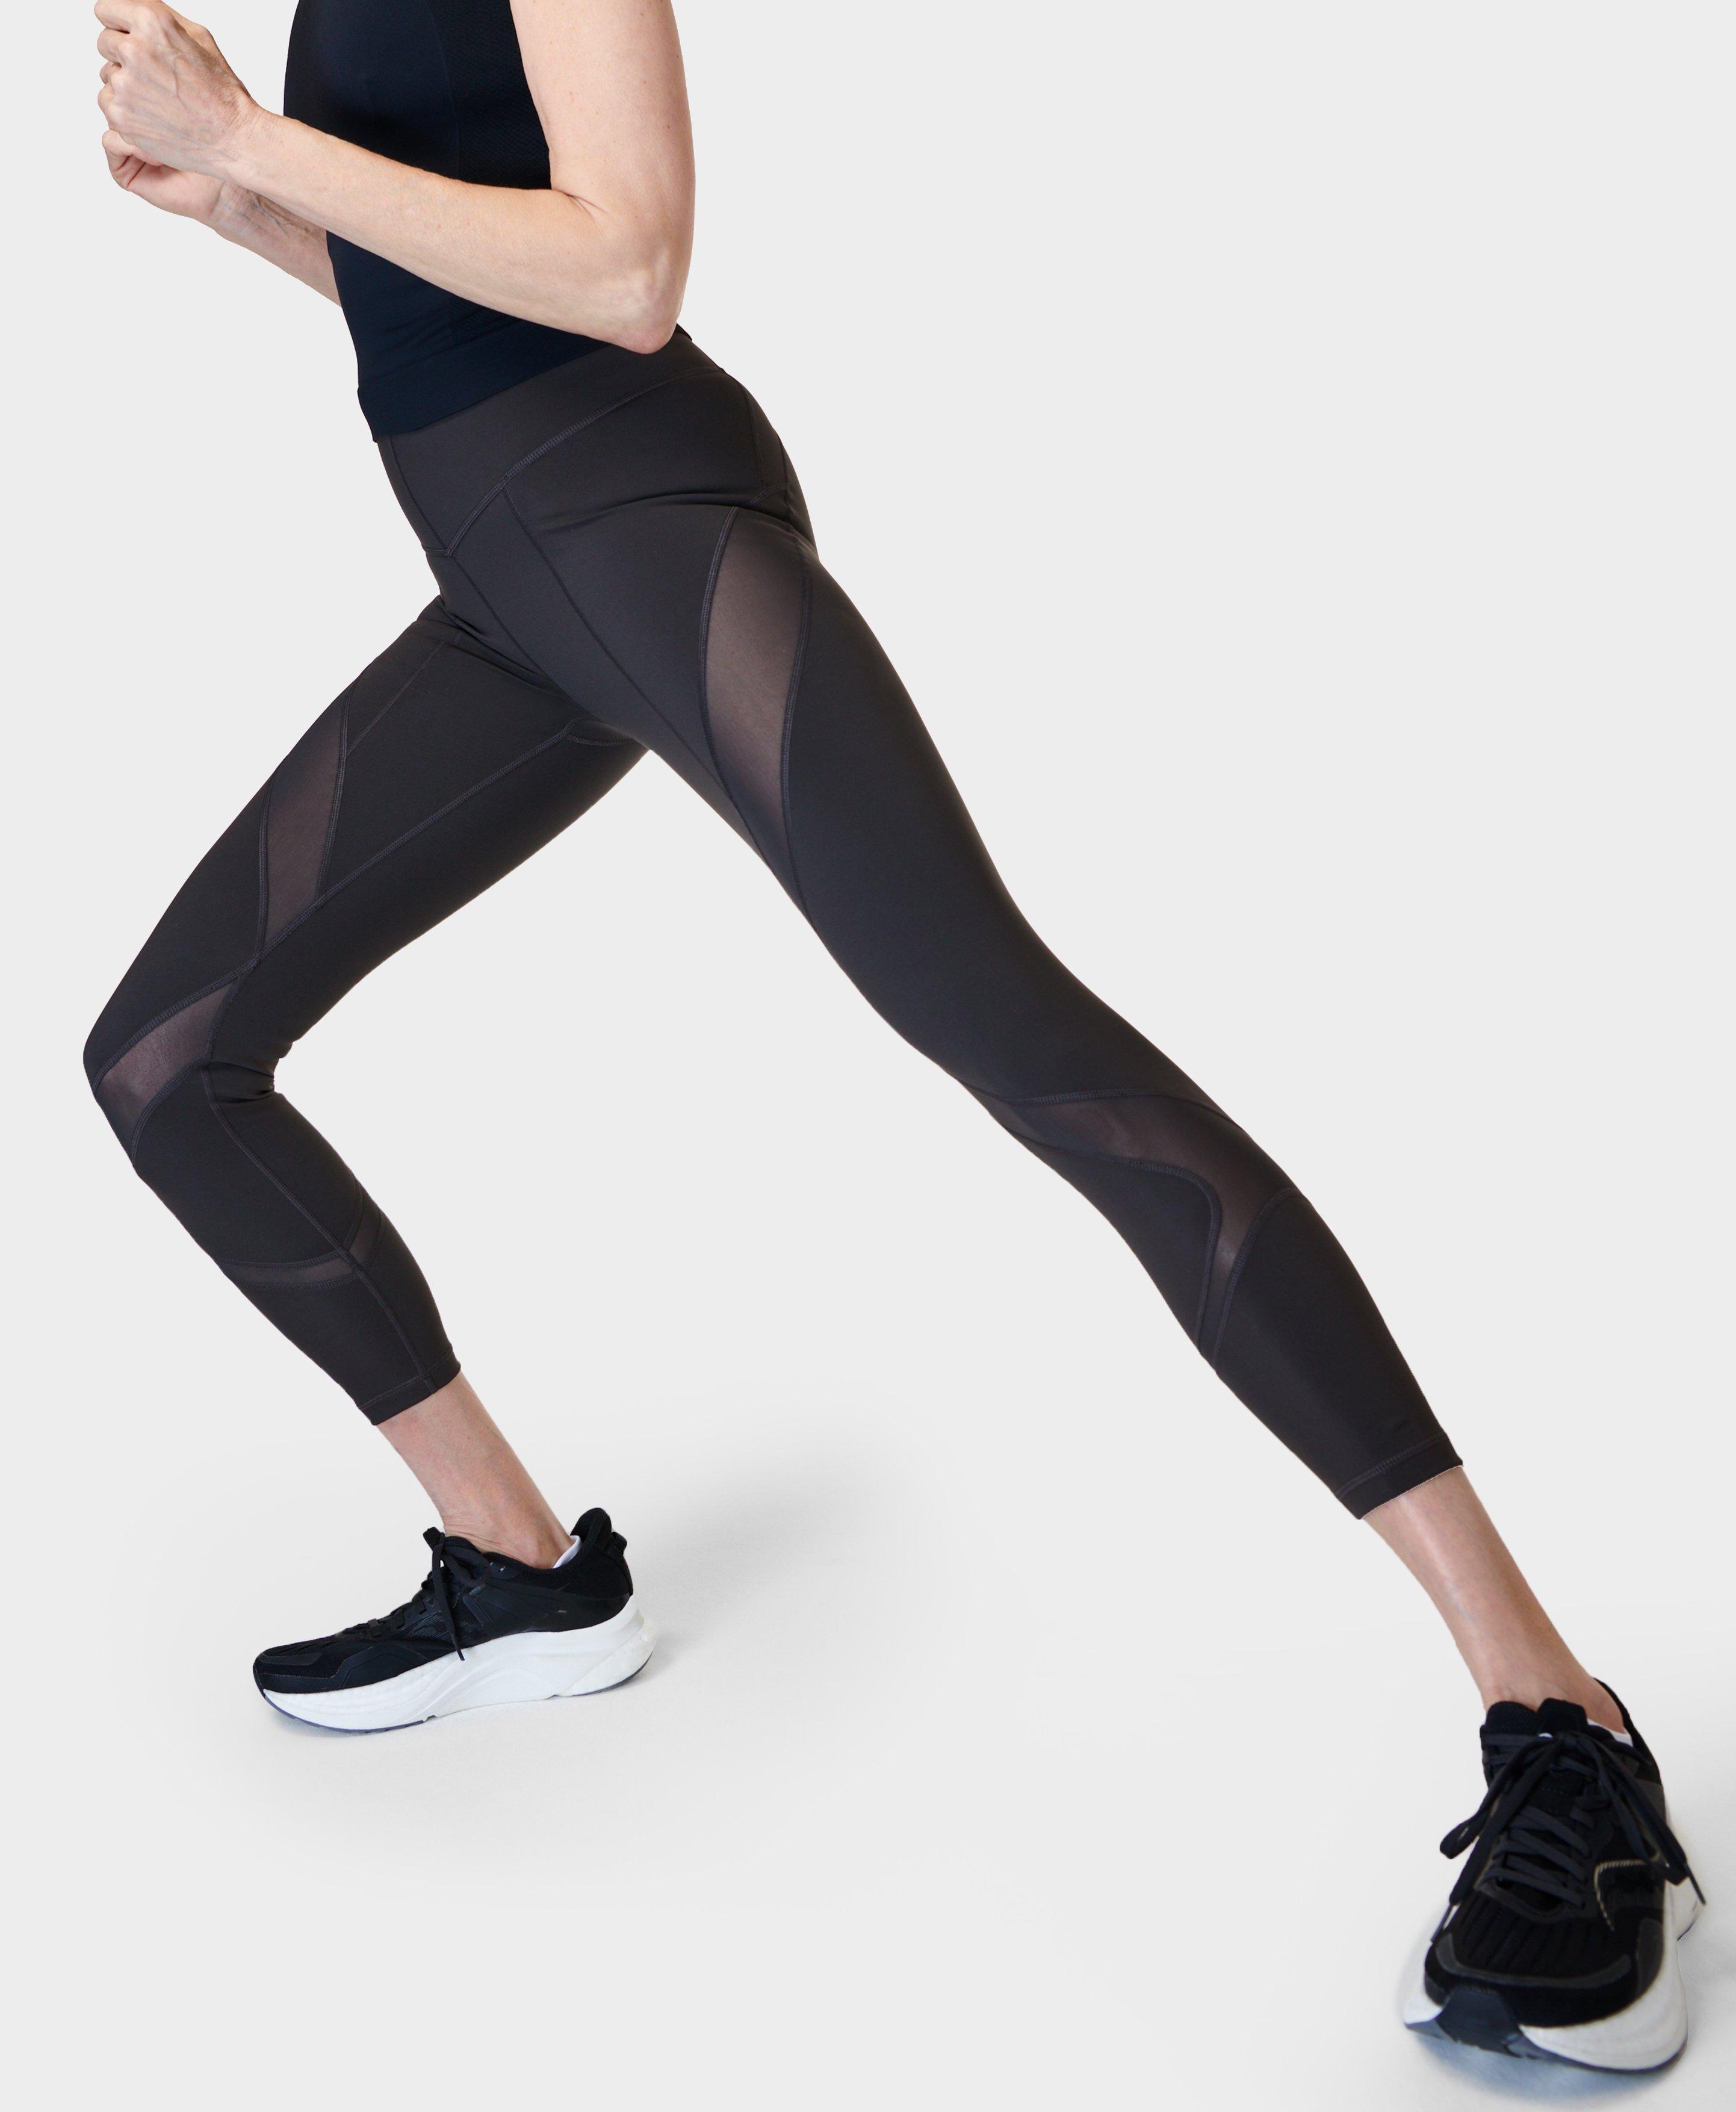 Power Illusion Mesh 7/8 Workout Leggings - Dark Grey, Women's Leggings